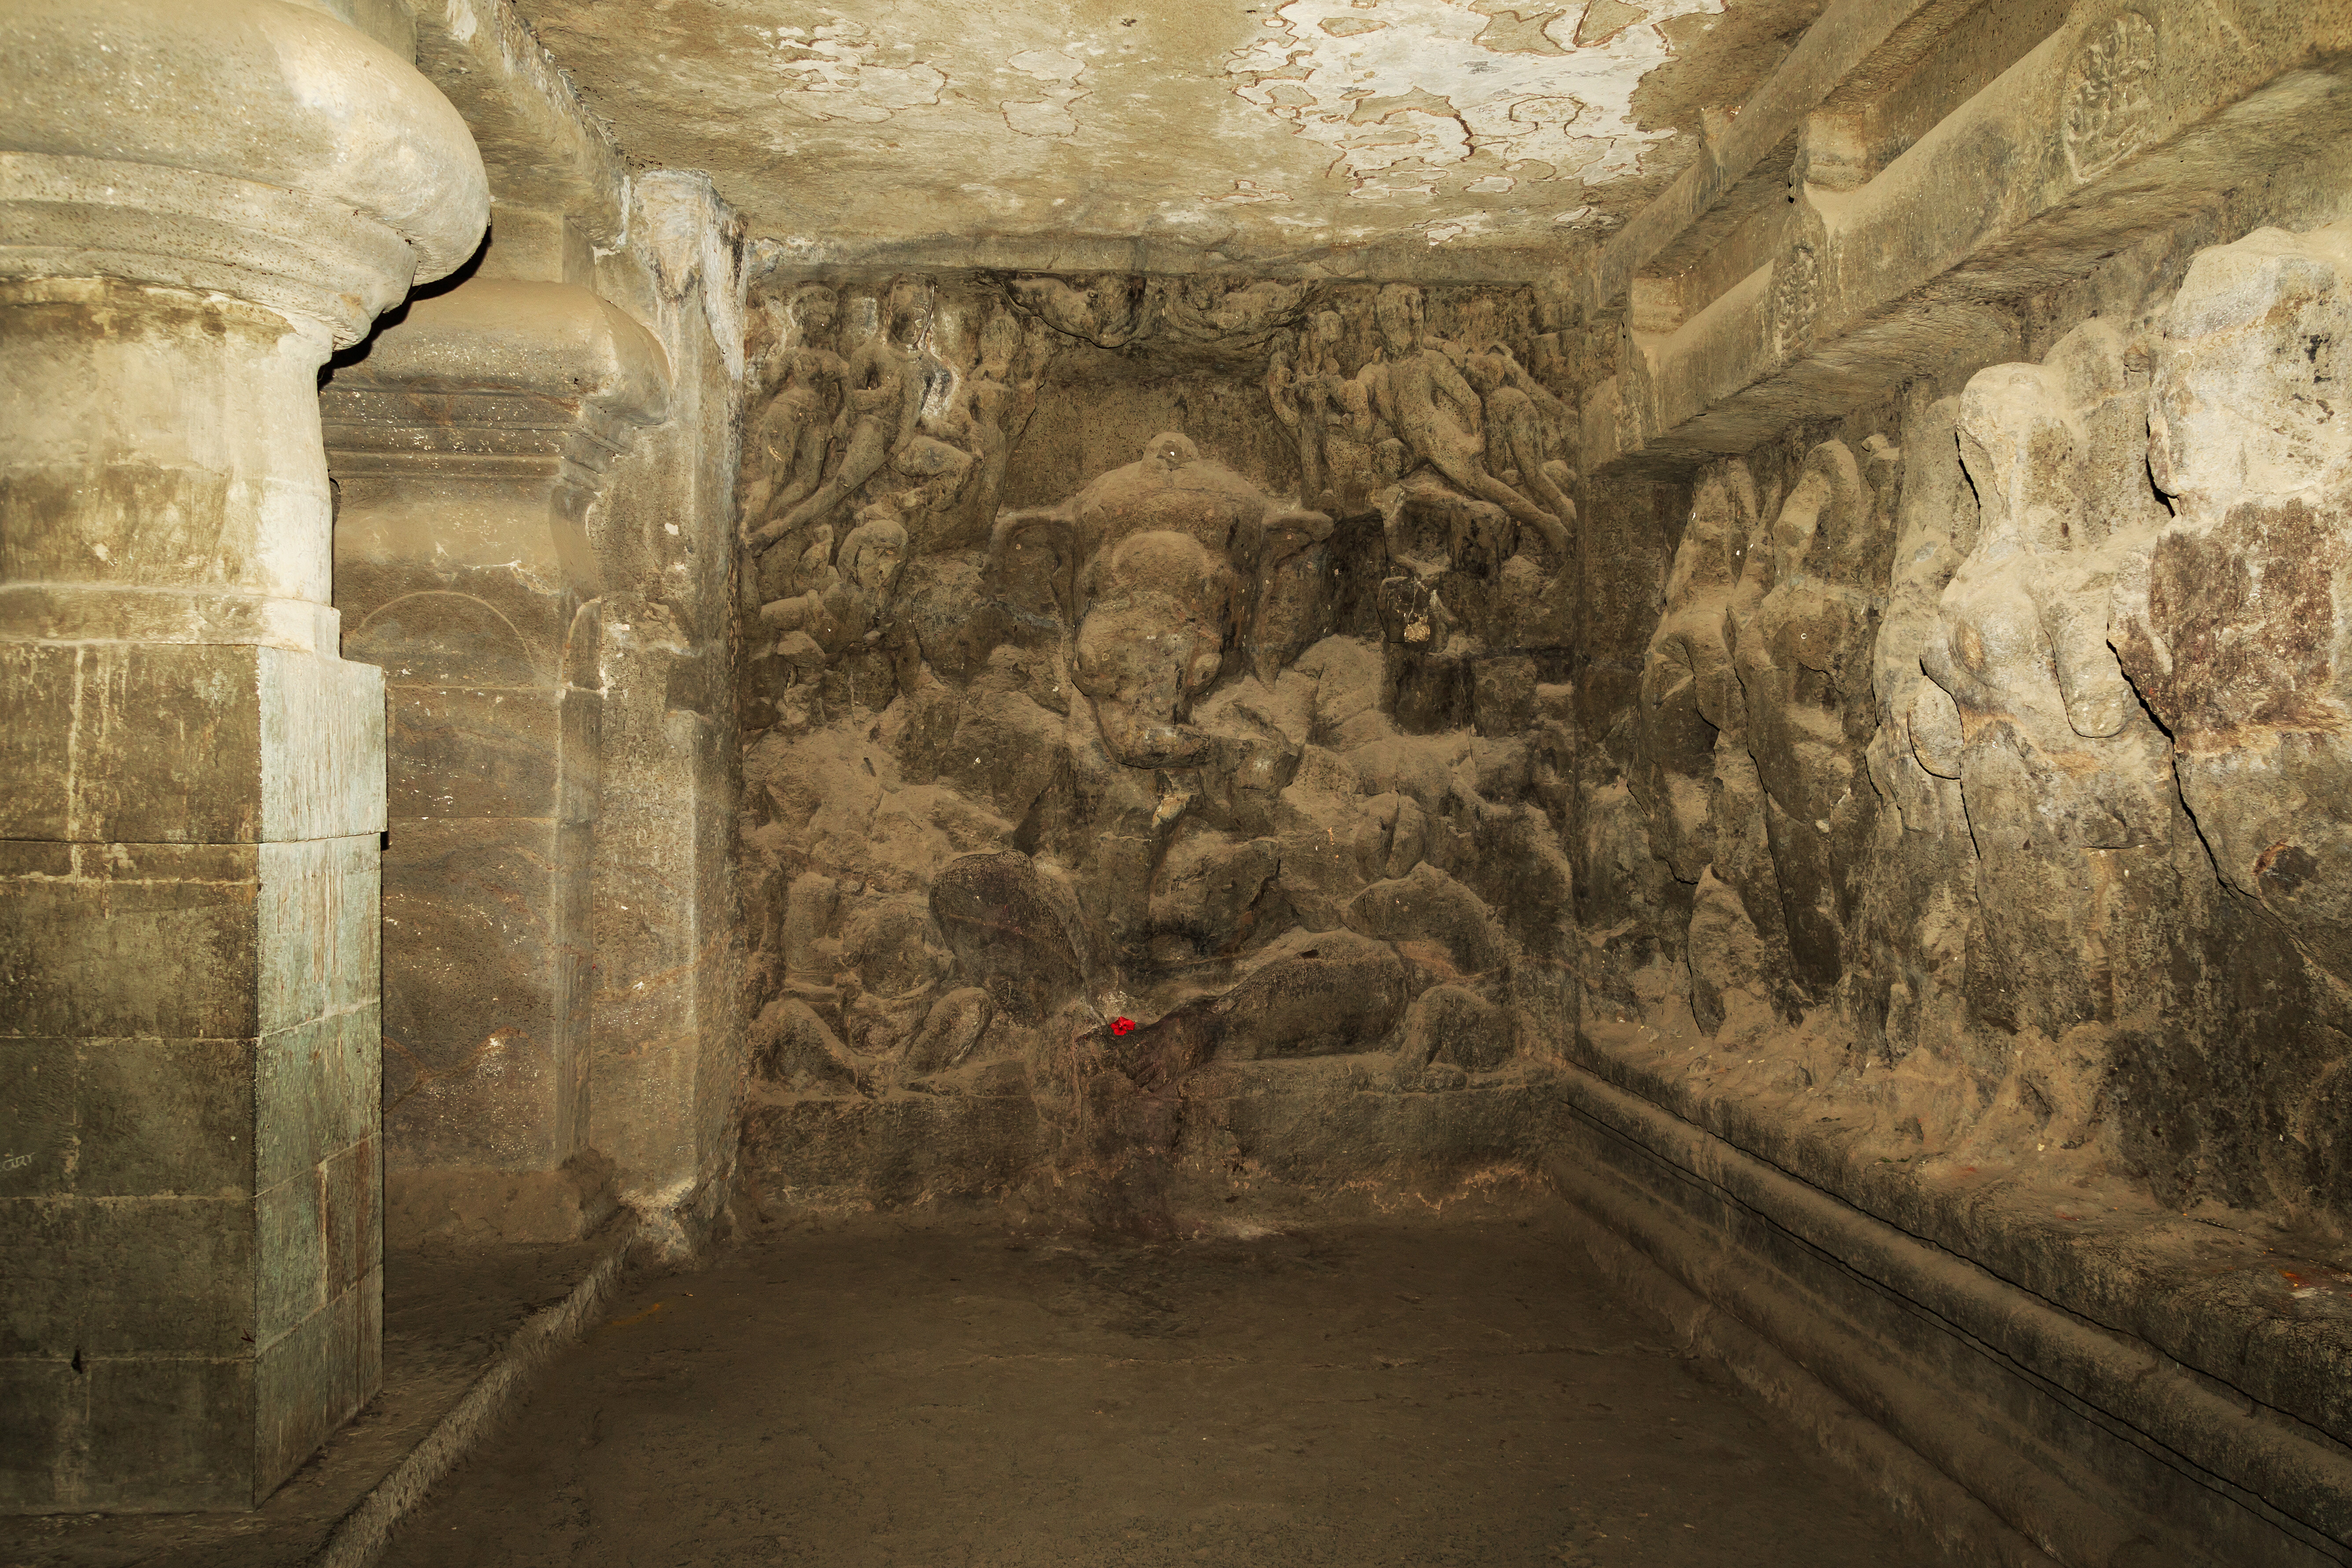 Изображение бога Ганеши, выбитое в
скале пещер Элефанта.